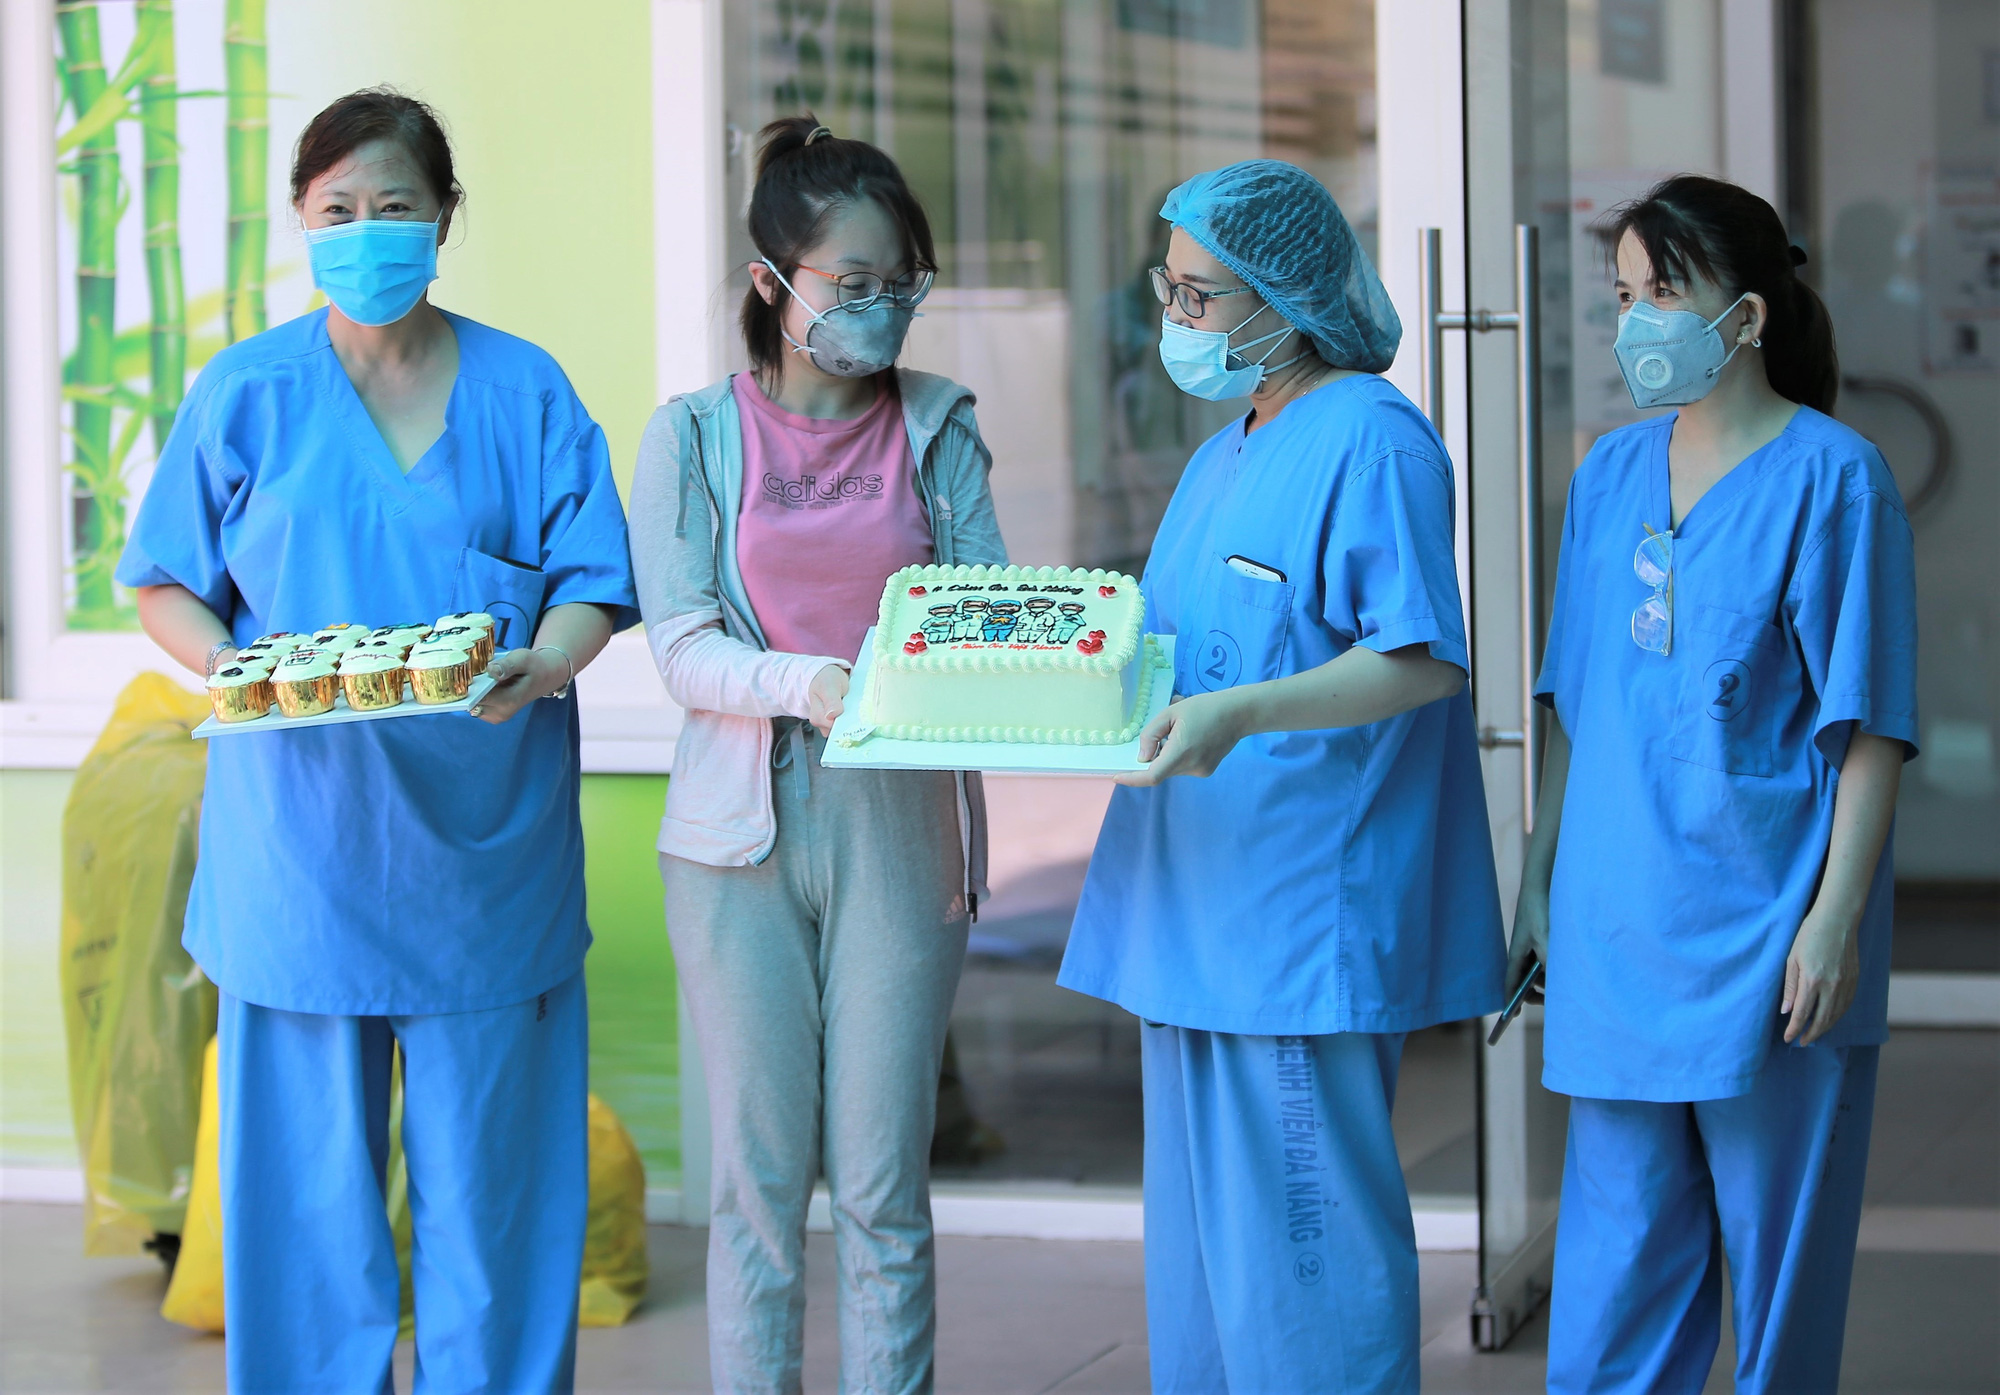 Bệnh nhân mắc Covid-19 cuối cùng ở Đà Nẵng xuất viện: Tôi rất cảm động vì sự chu đáo của các y bác sĩ - Ảnh 1.